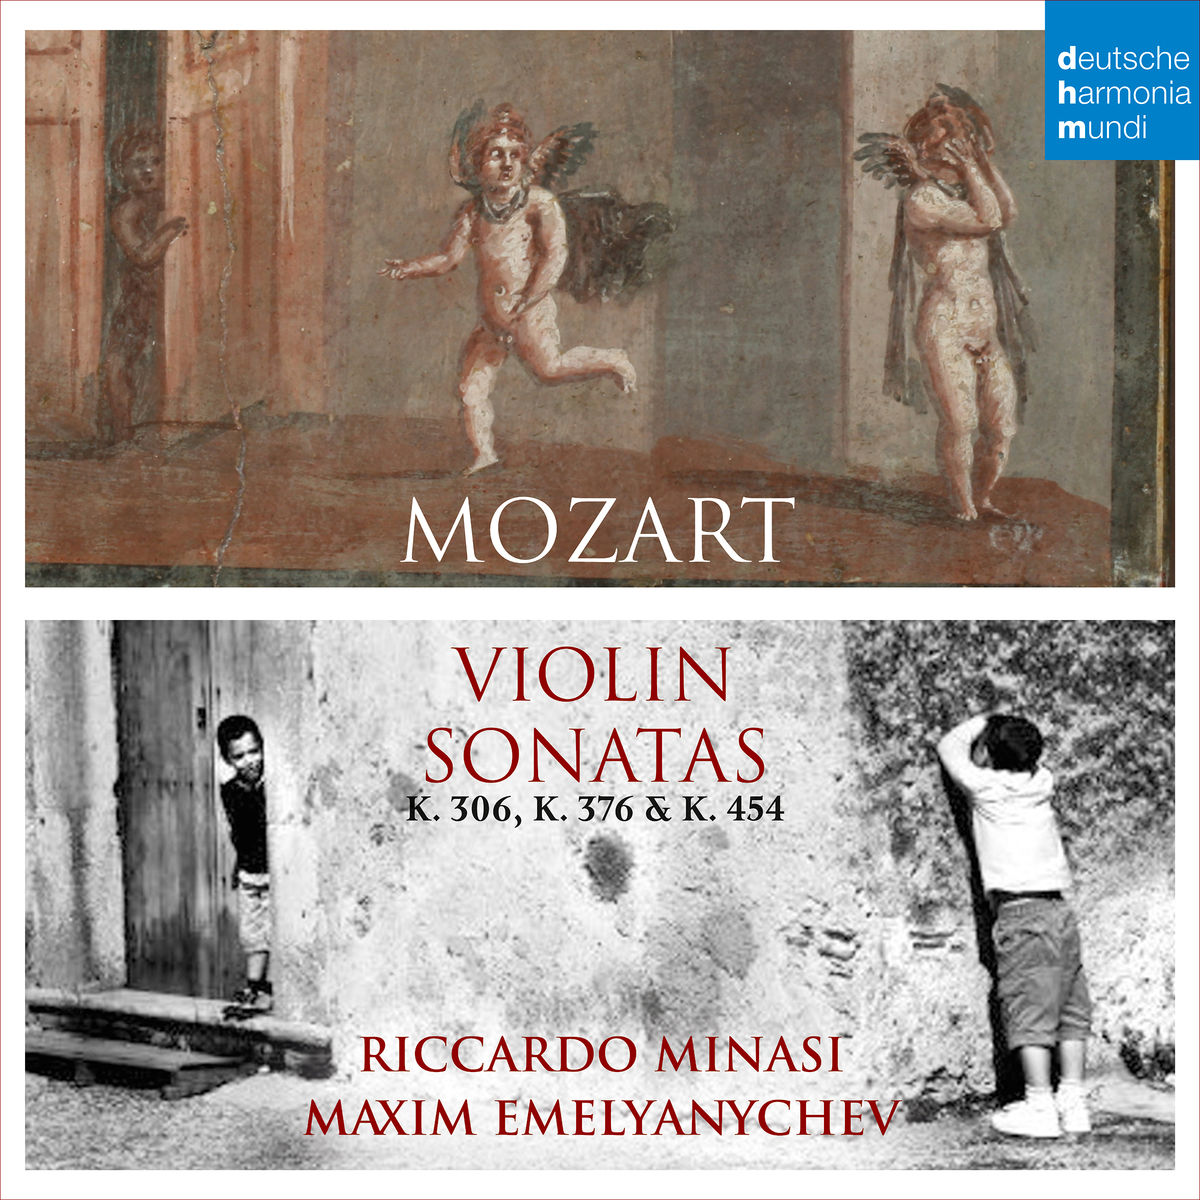 Riccardo Minasi & Maxim Emelyanychev - Mozart: Violin Sonatas, K. 306, 376 & 454 (2016) [Qobuz FLAC 24bit/96kHz]